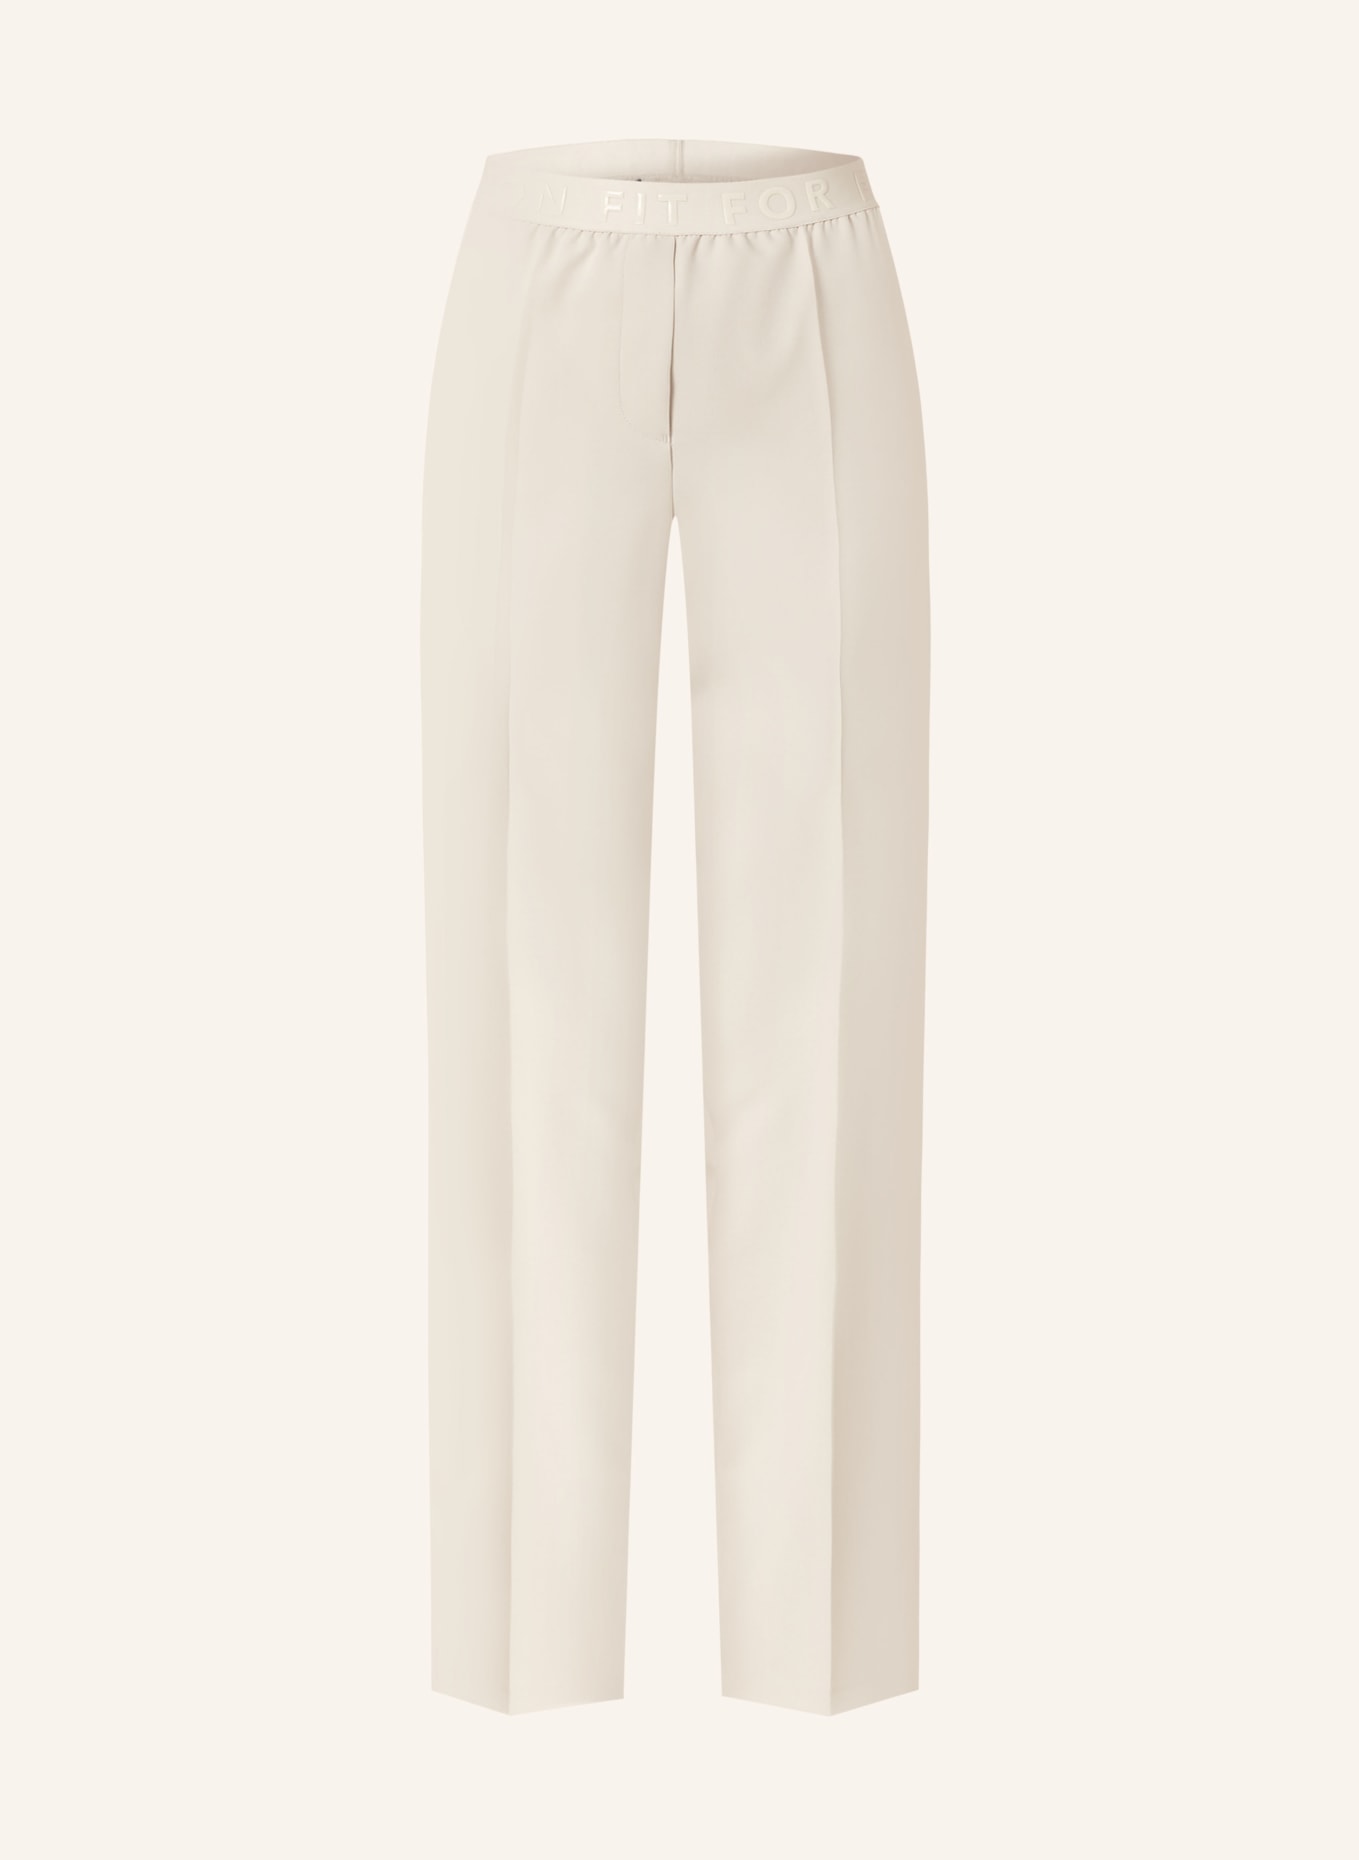 MARC AUREL Trousers, Color: LIGHT BROWN (Image 1)